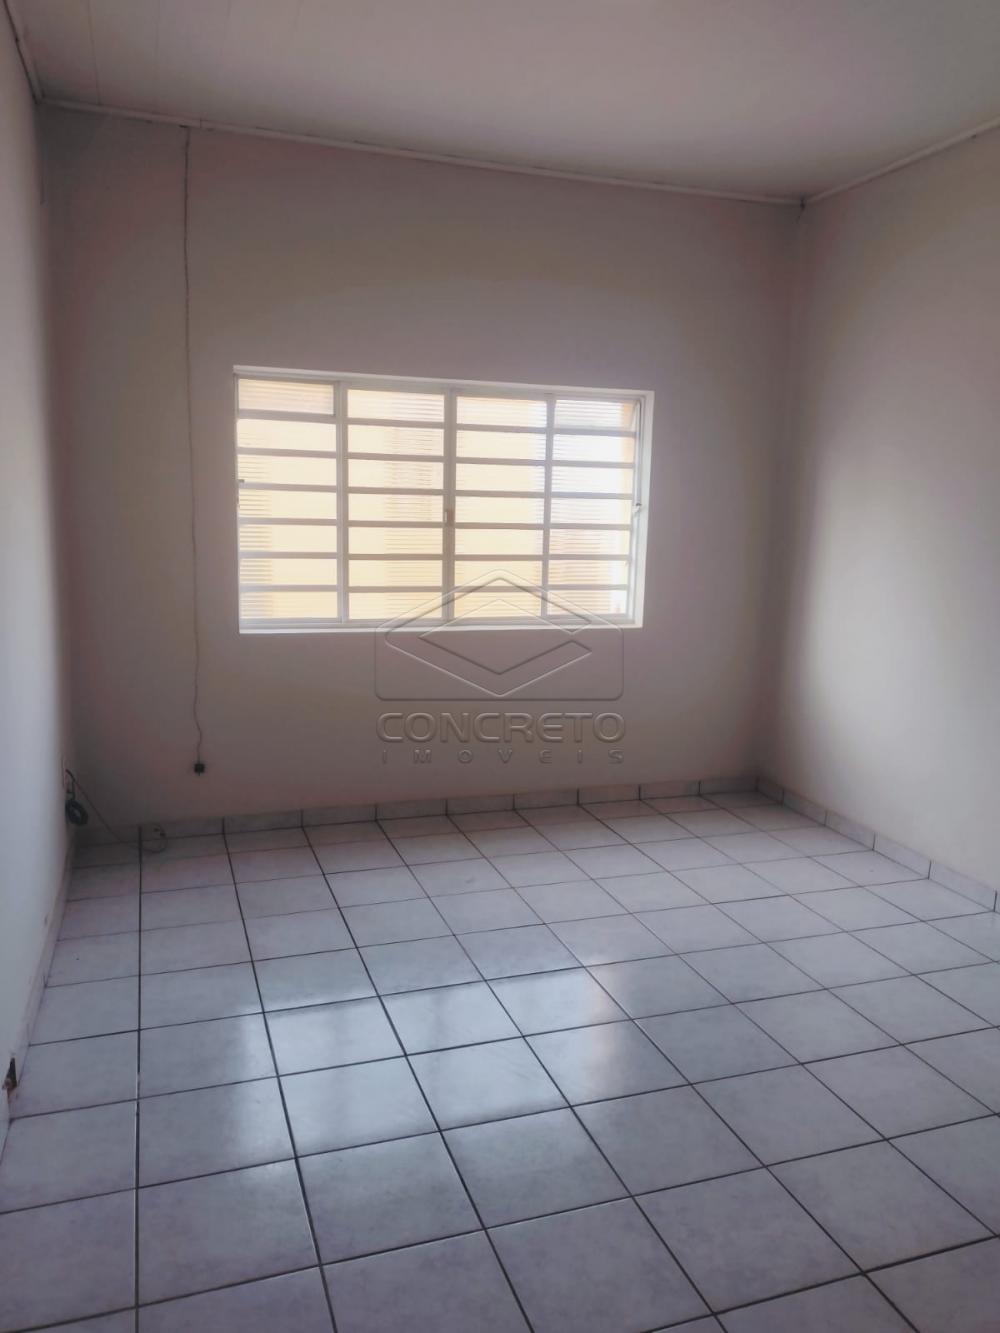 Alugar Casa / Residencia em Bauru R$ 1.000,00 - Foto 11